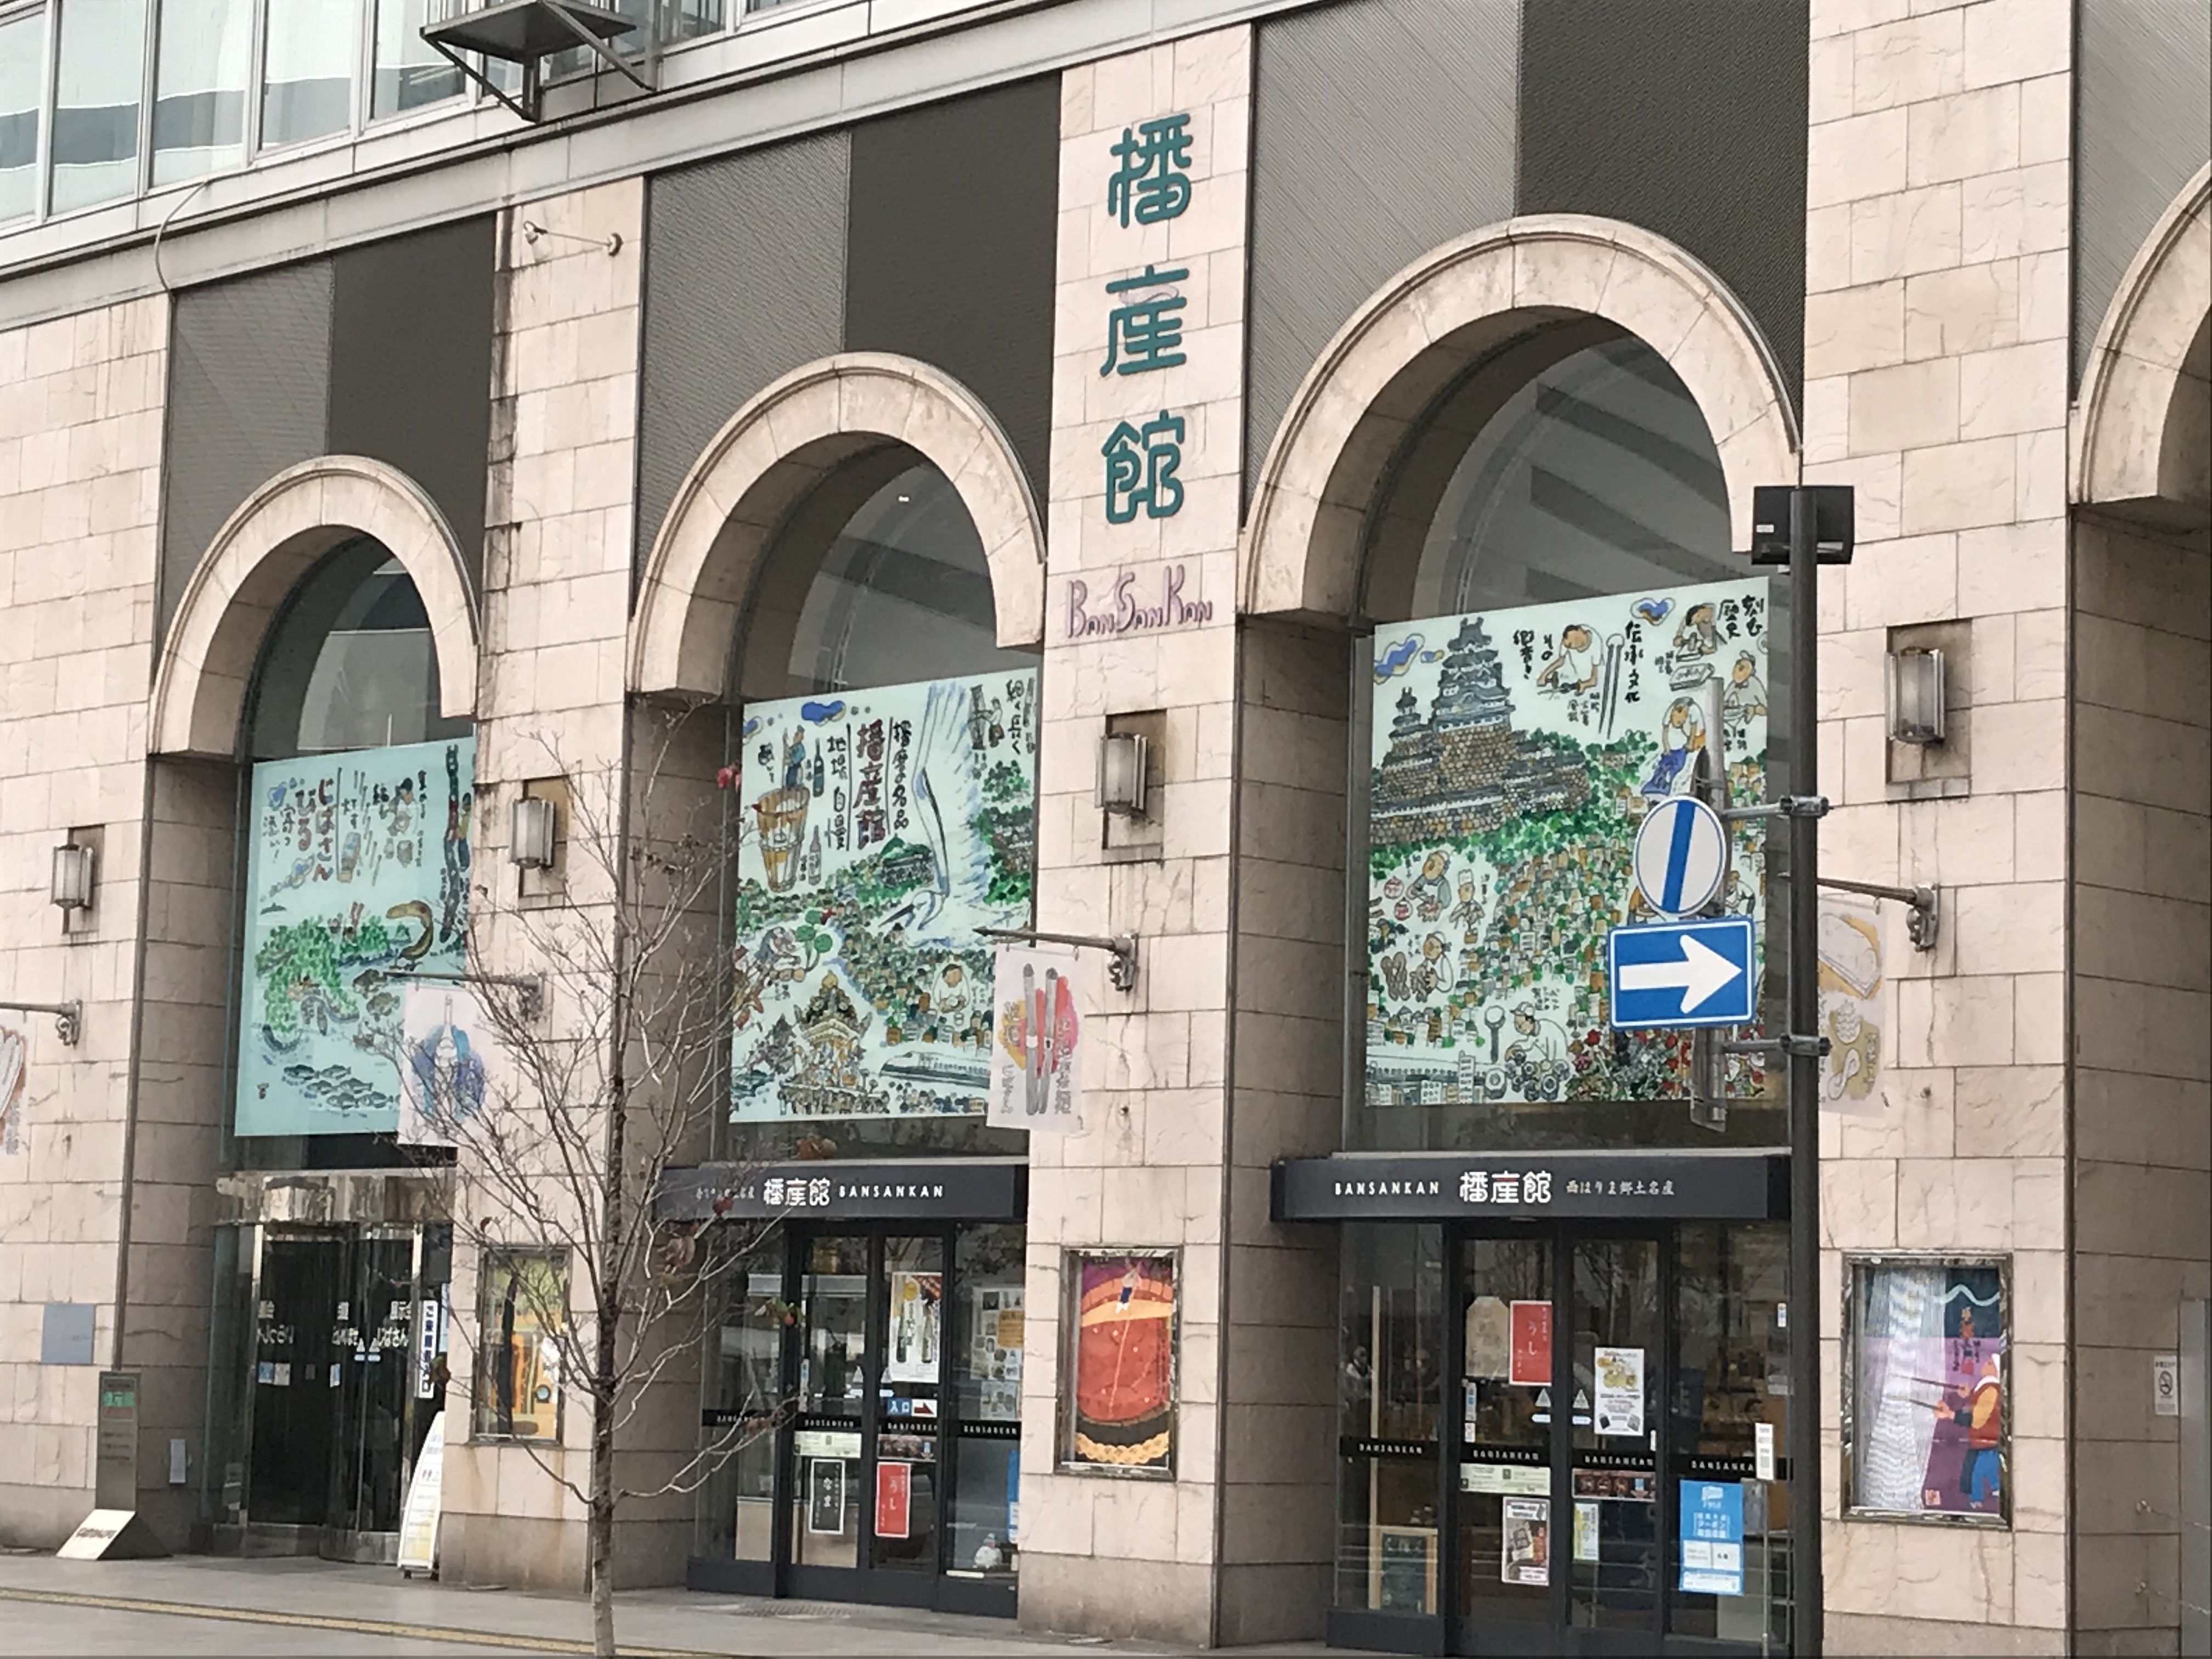 播産館　外観
ホテルからは
姫路駅西側連絡通路を通るとすぐです